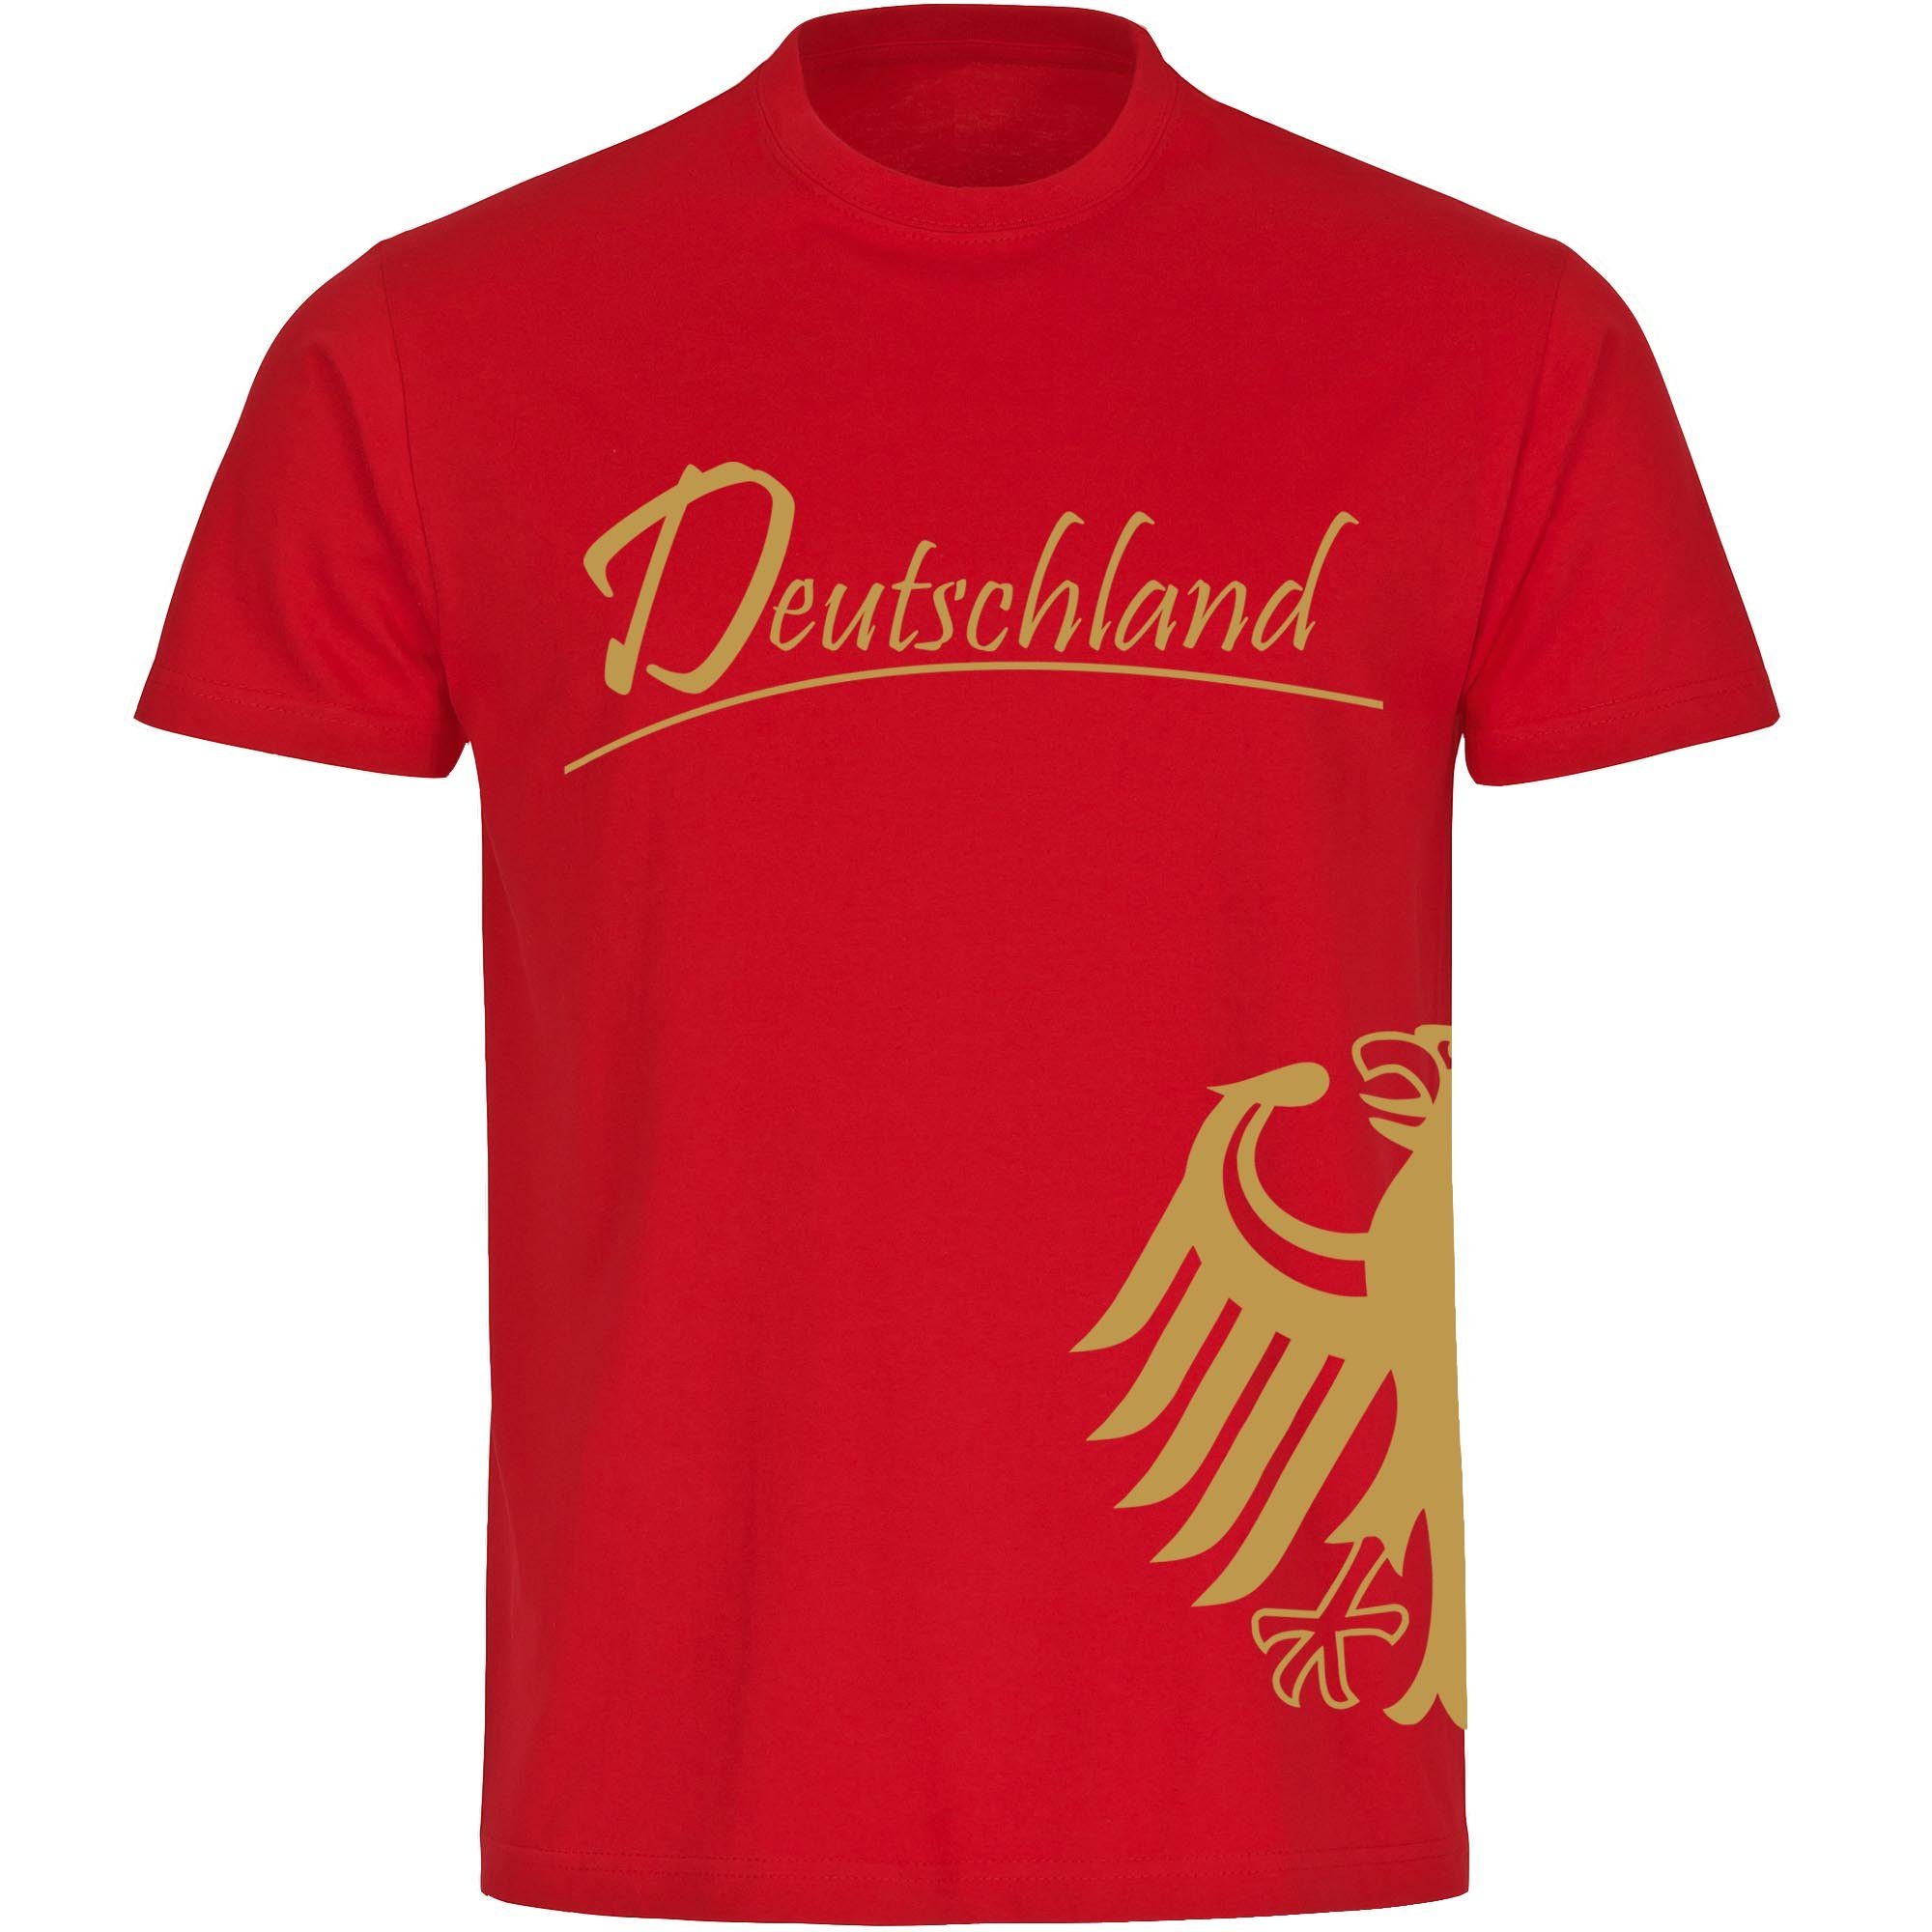 multifanshop T-Shirt Kinder Deutschland - Adler seitlich Gold - Boy Girl